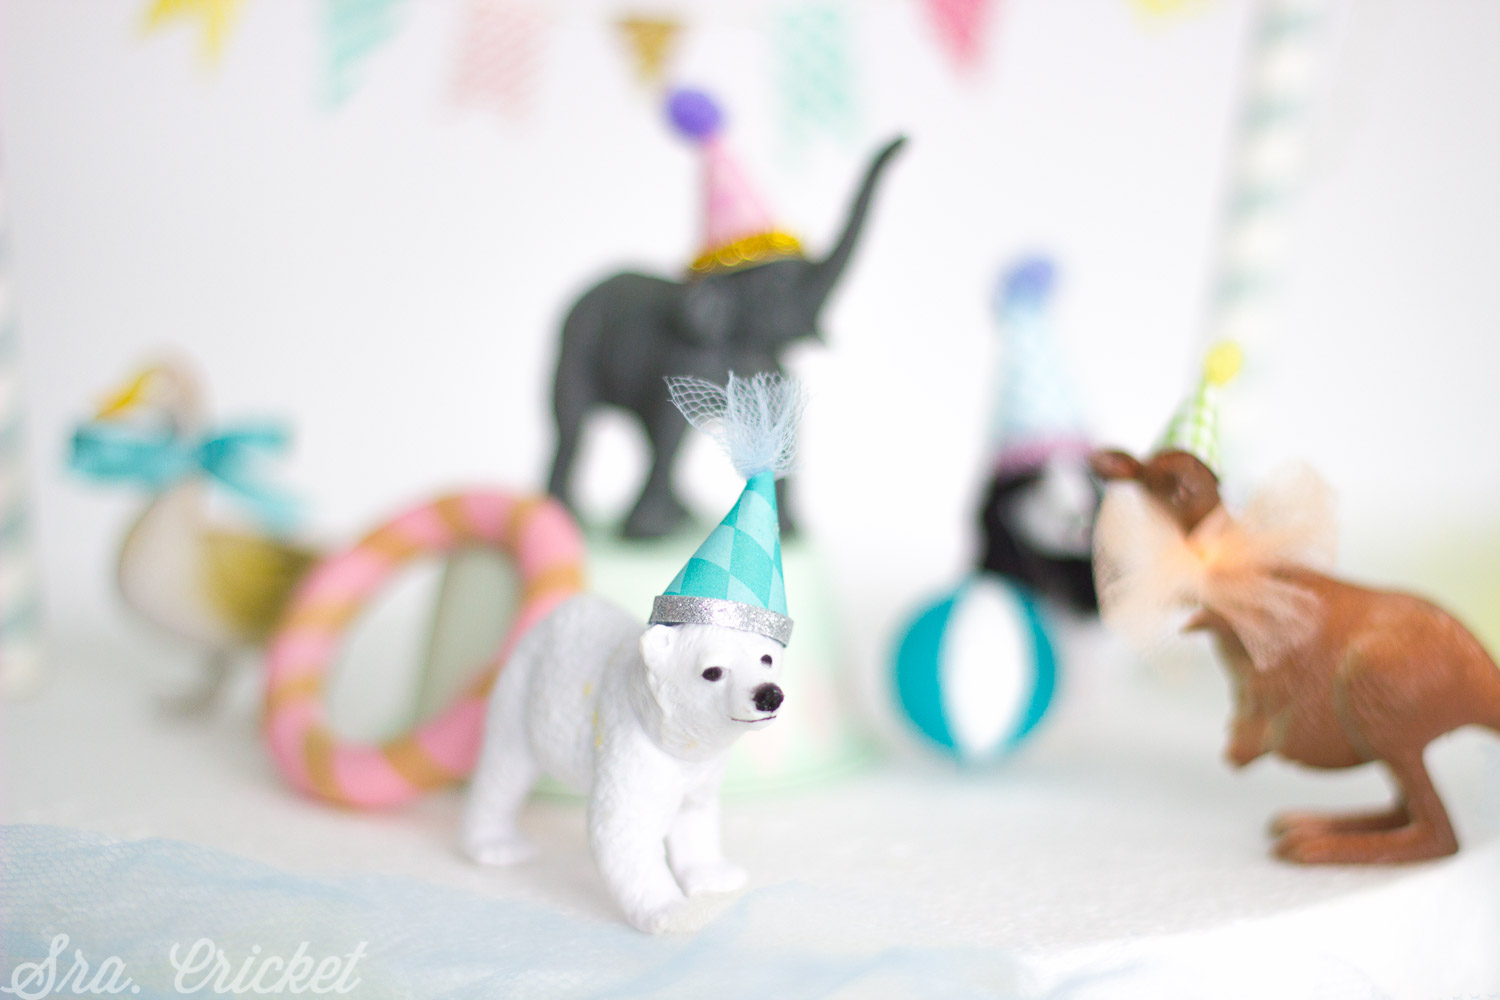 decorar una tarta con animales de juguete y plastico